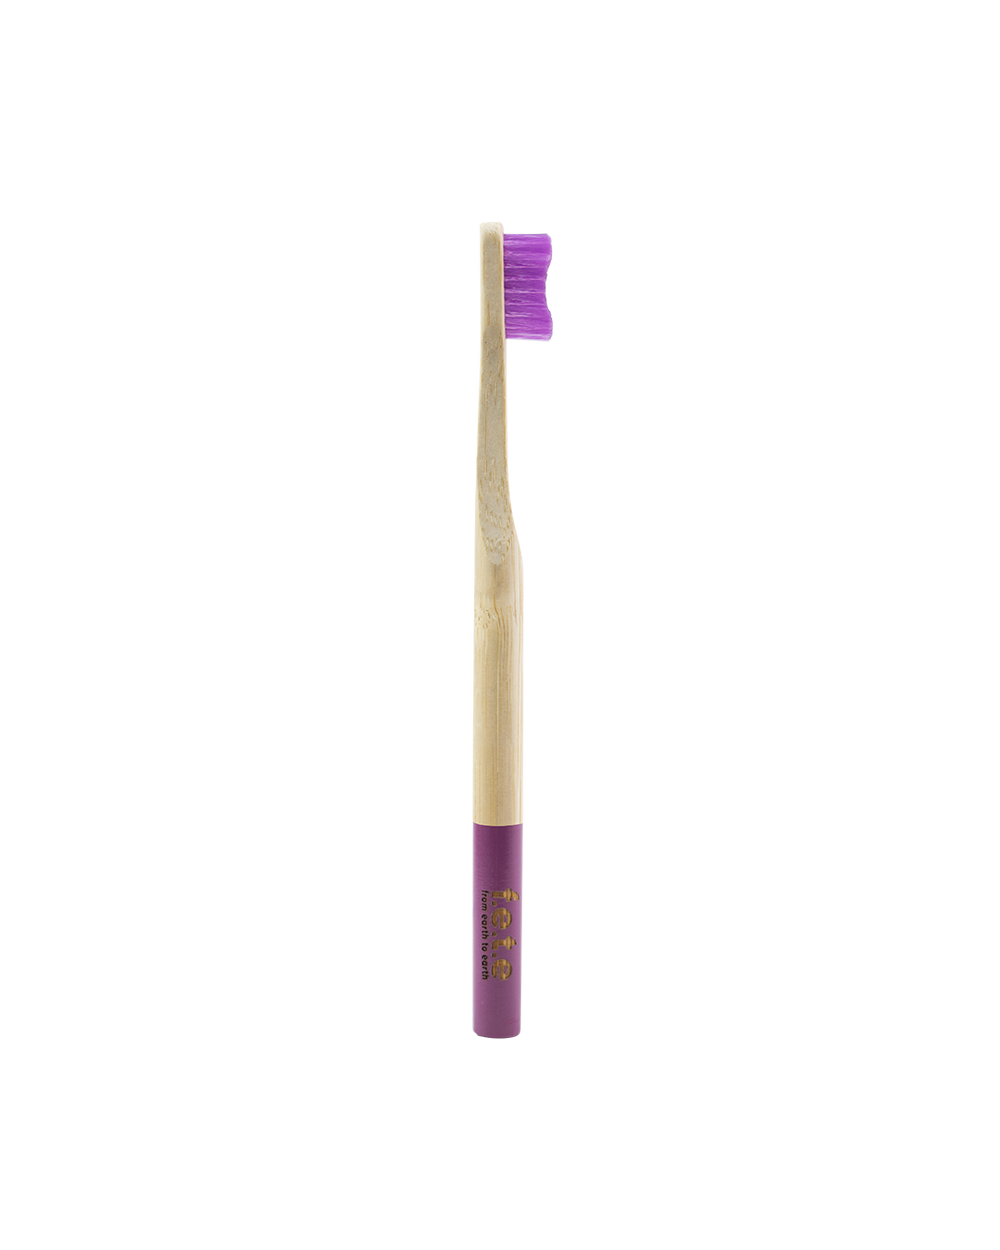 Bamboo toothbrush - medium softness fibers